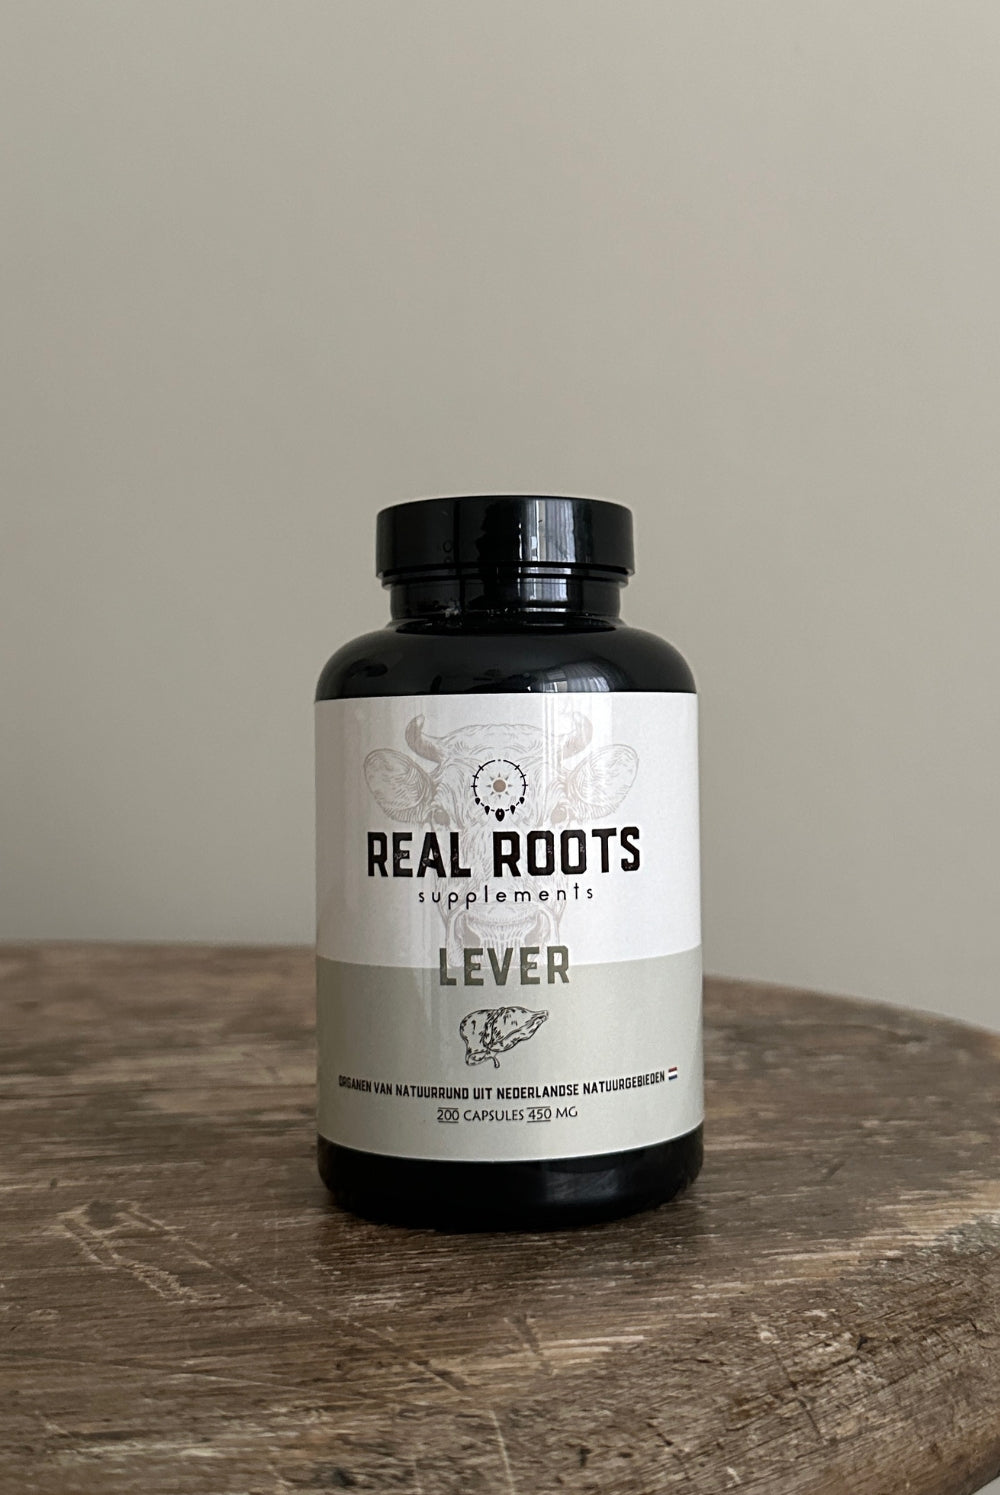 Real Roots Lever Orgaansupplementen